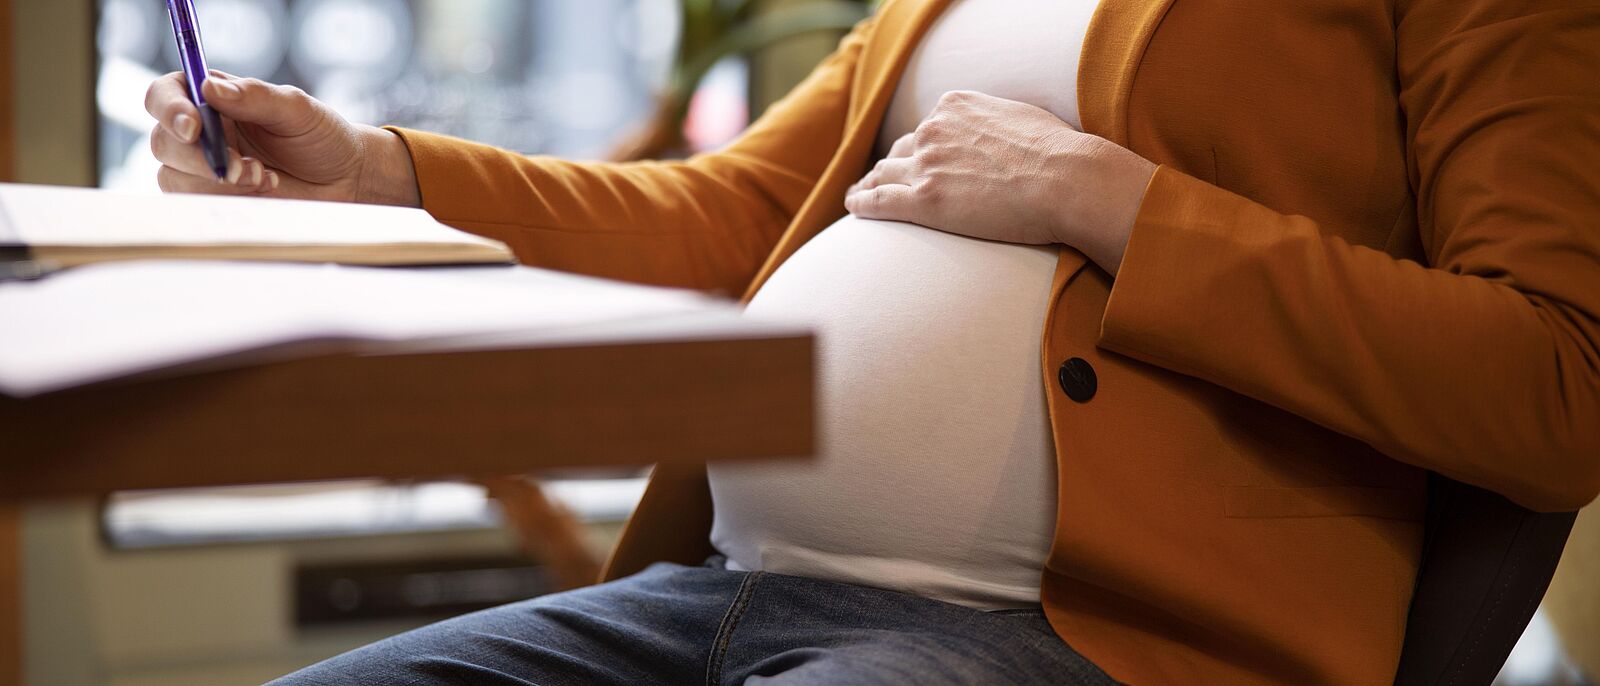 Makroaufnahme: Eine schwangere Frau sitz am Schreibtisch und Dokumente vor sich liegen. Auf einem Dokument notiert sie etwas, dabei liegt ihre linke Hand auf dem Bauch.